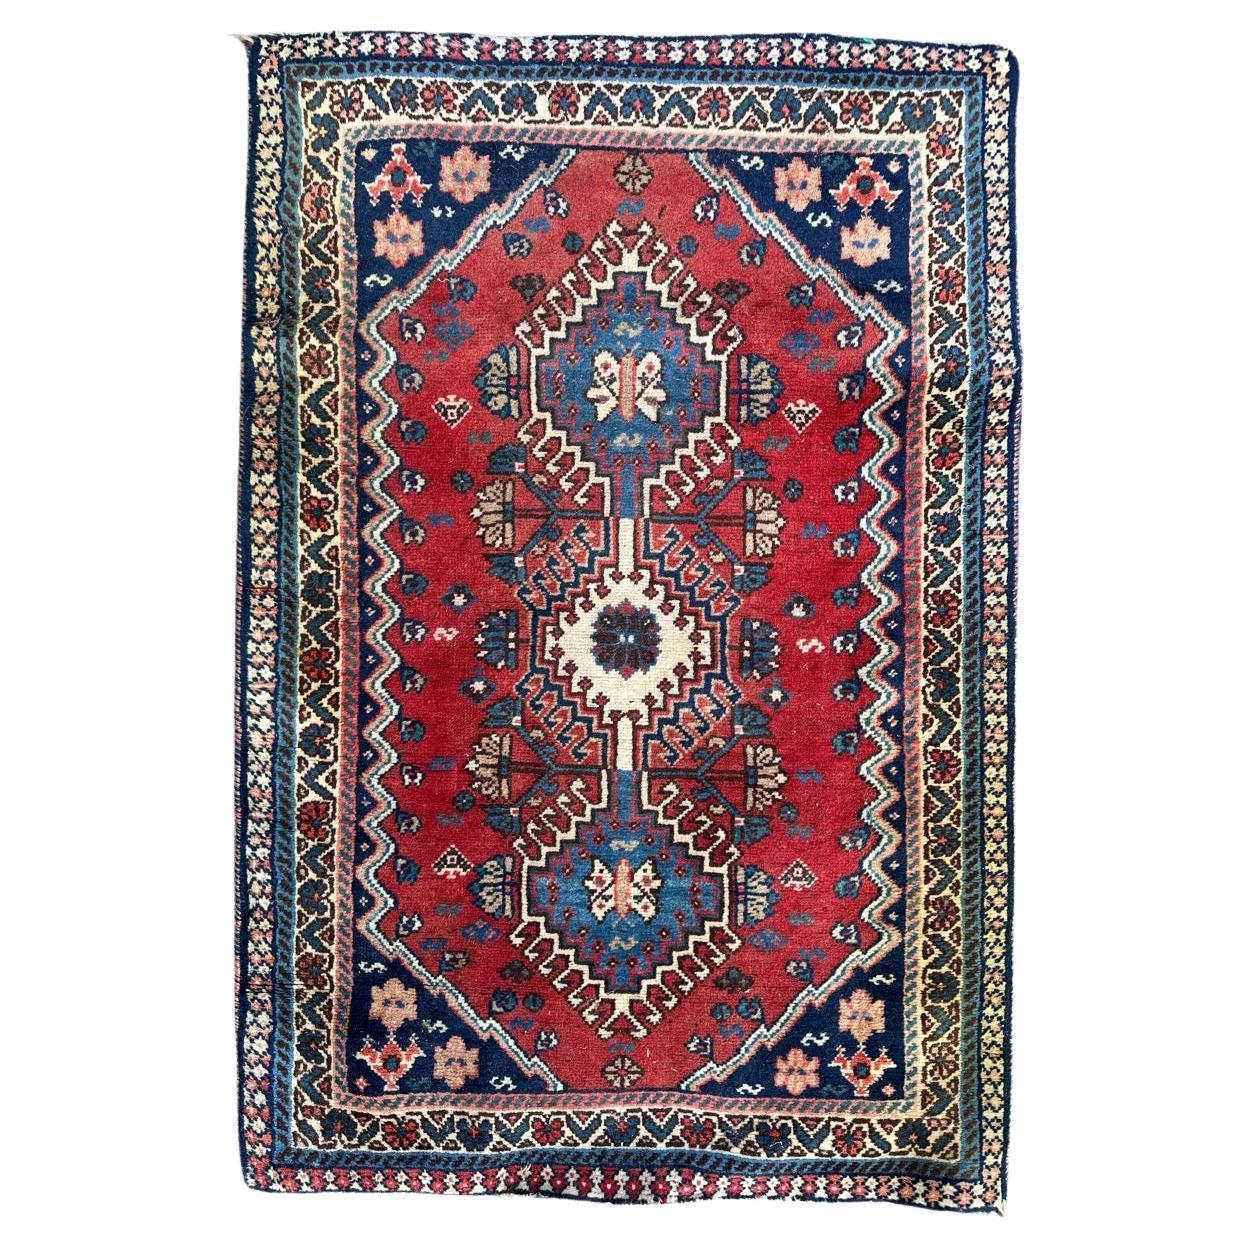 Bobyrug’s pretty small vintage Yalameh rug 